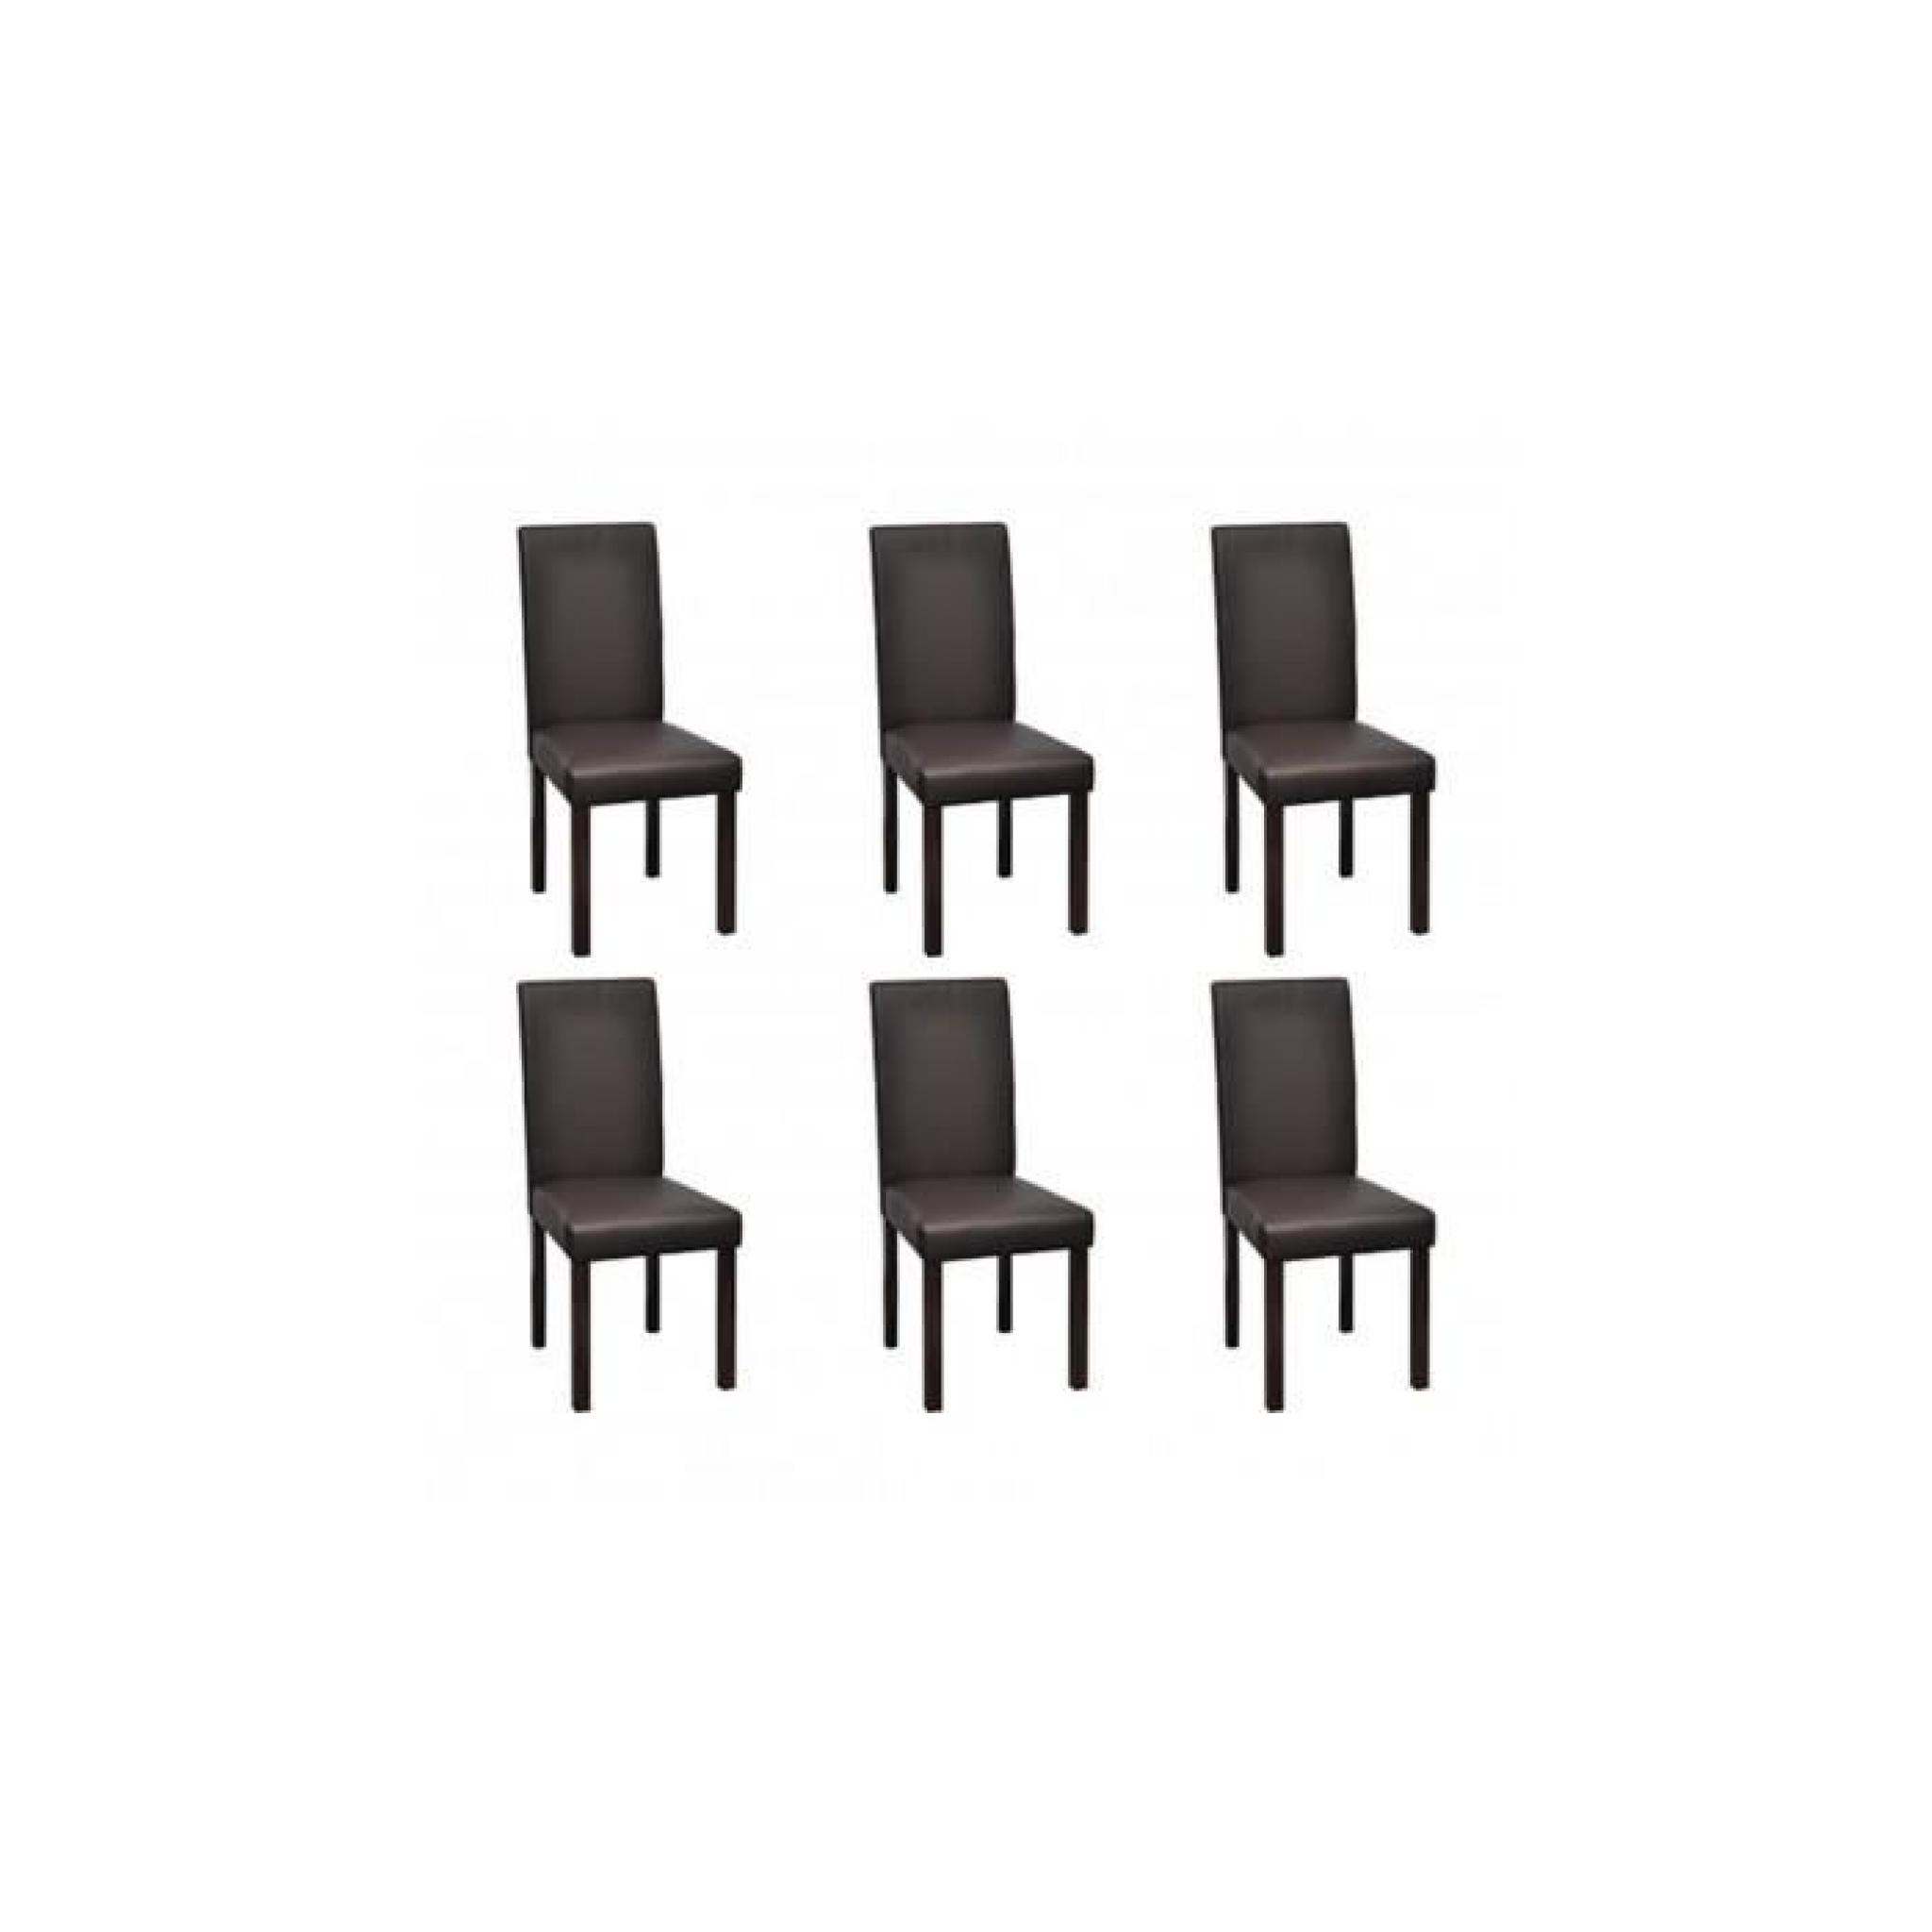 Chaise en cuir design colonial marron bois (lot de 6)